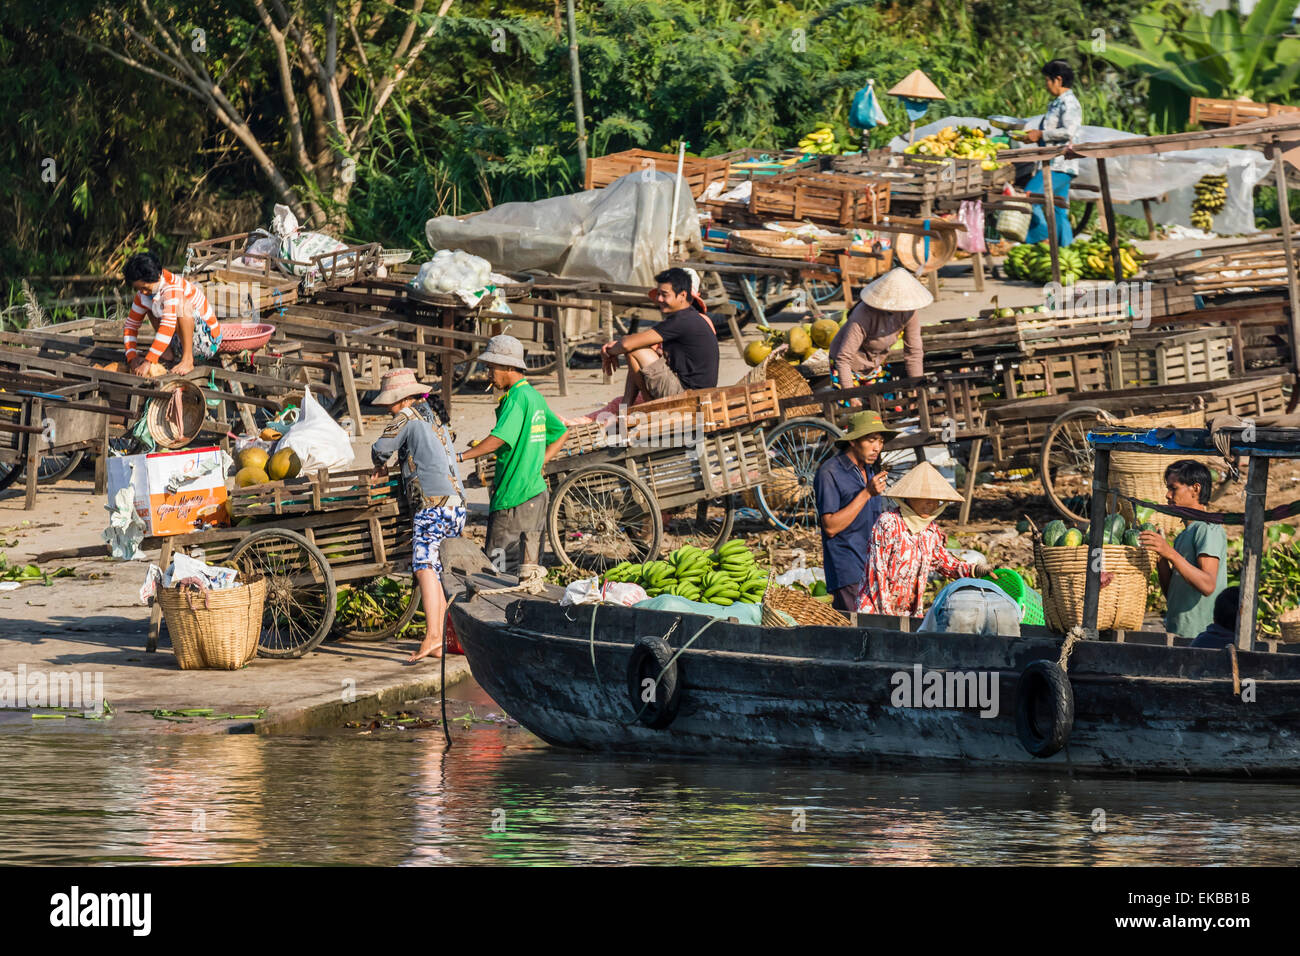 Les familles au marché flottant la vente des produits et marchandises à Chau Doc, Delta du Mekong, Vietnam, Indochine, Asie du Sud-Est, l'Asie Banque D'Images